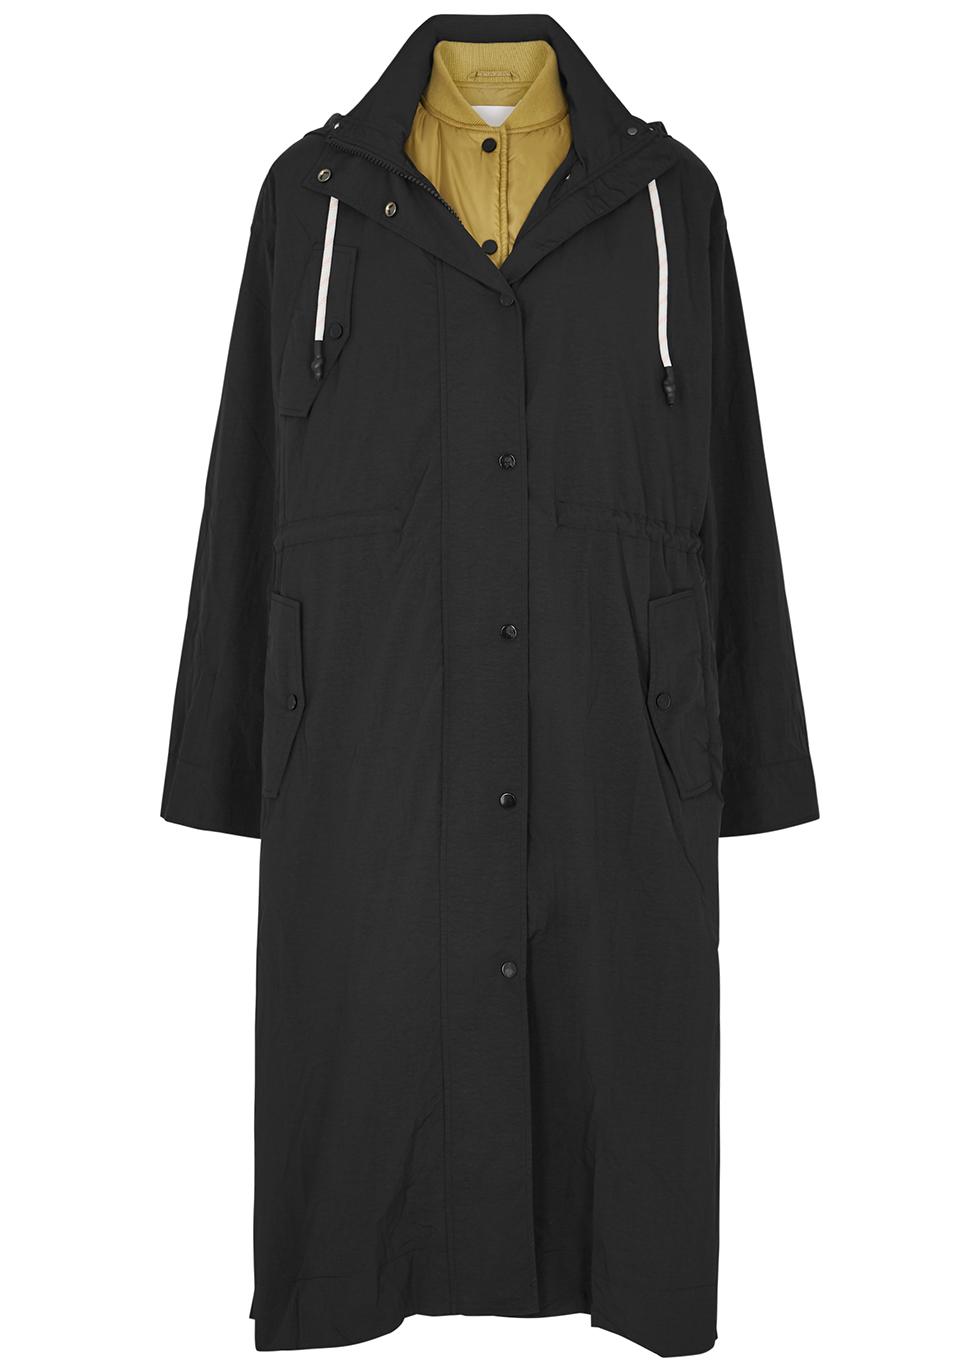 Carlton black layered shell coat by DAY BIRGER ET MIKKELSEN